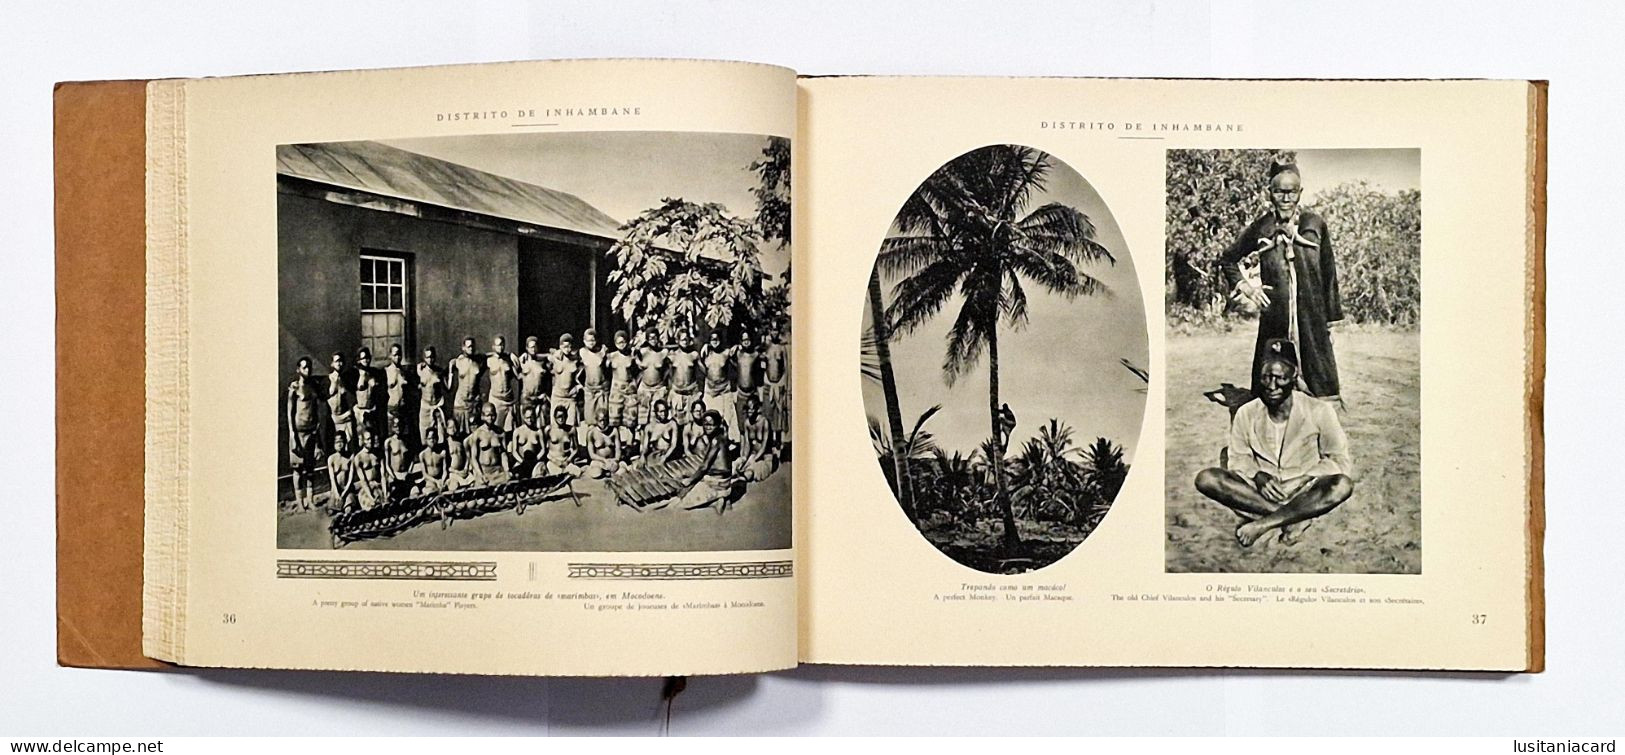 Albuns Fotograficos e Descritivos da Colonia de Moçambique(3 VOLUMES: II -III e X -RARO)(José dos Santos Rufino-1929)